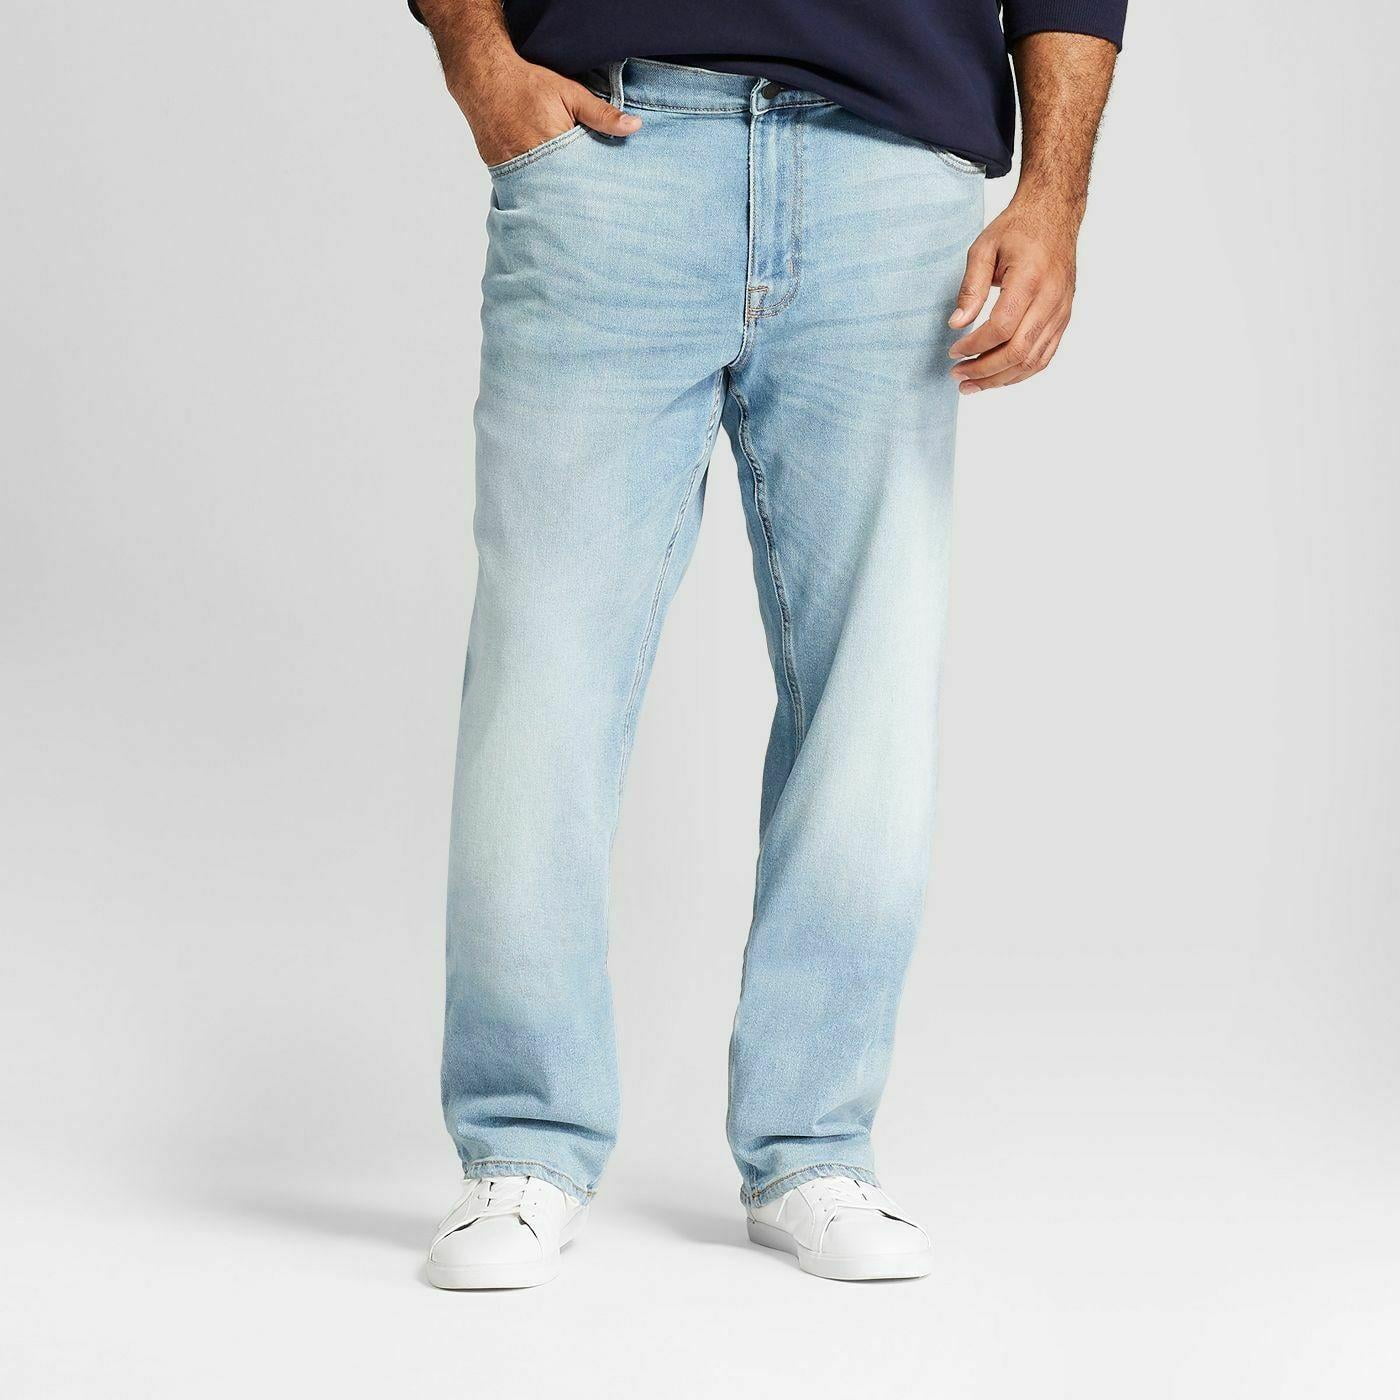 Goodfellow & Co Men's Big & Tall Slim Straight Fit Twill Soft Pants Navy 60x32